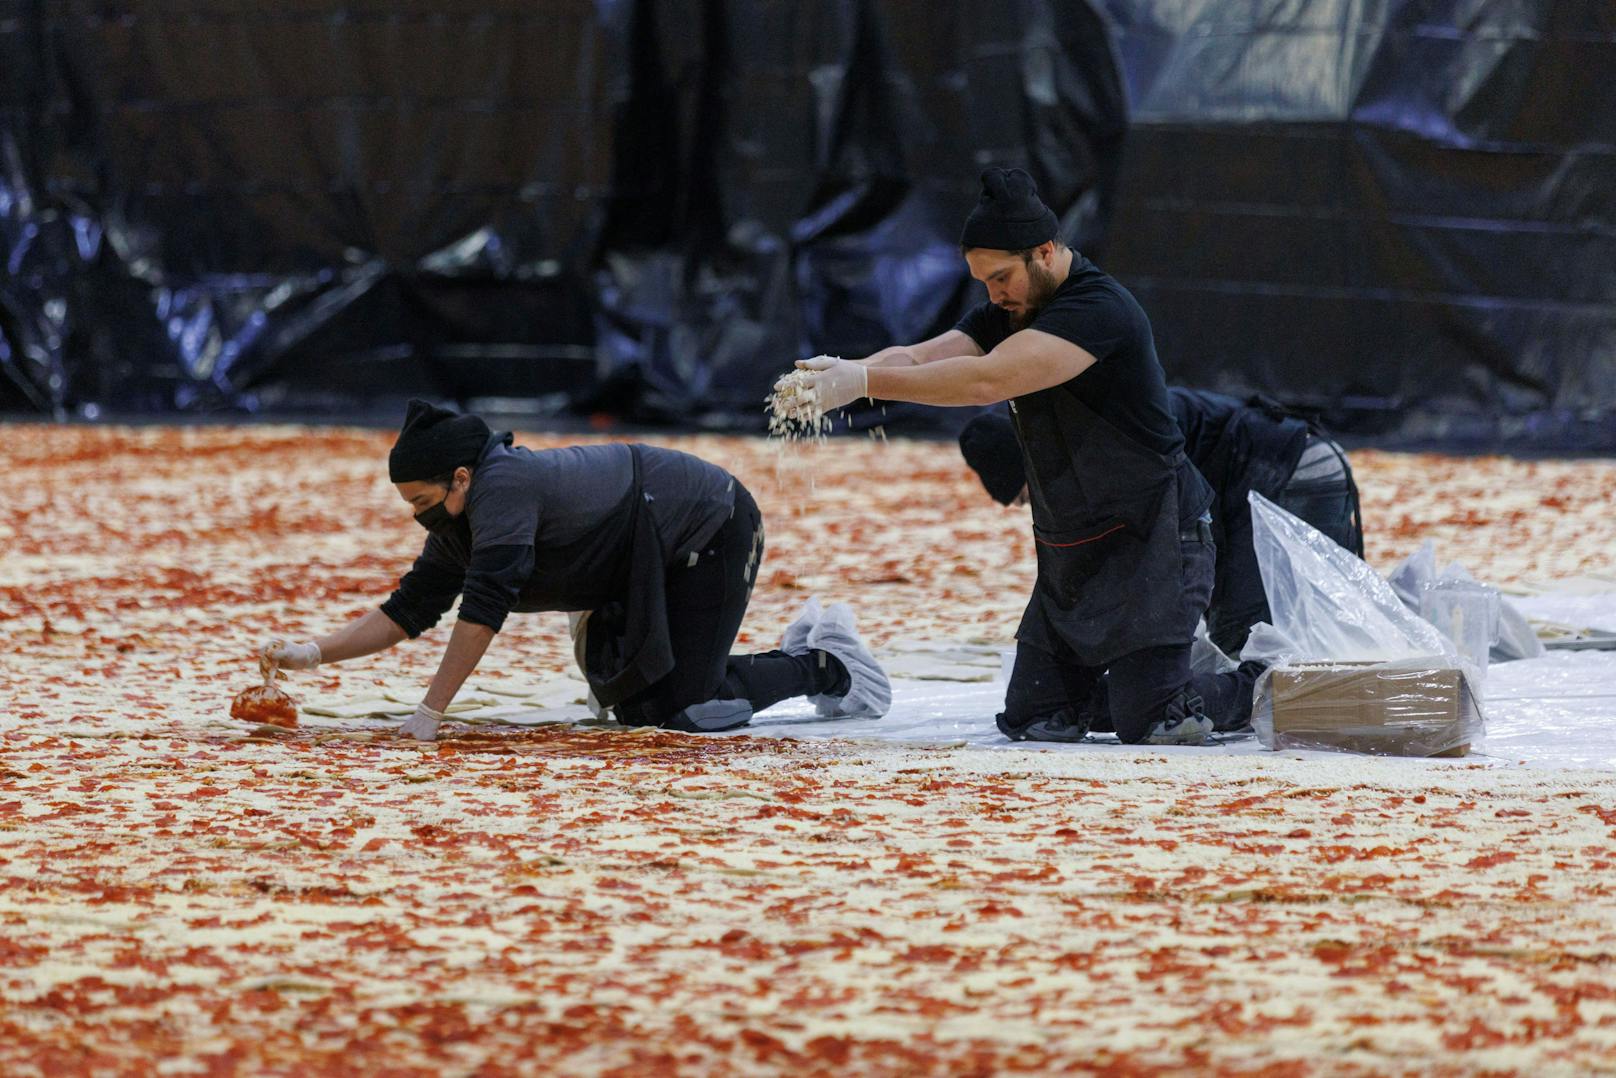 Zwei Tonnen Tomatensauce, über 600.000 Stück Pfefferoni, Unmengen Salami und fast vier Tonnen Käse wurden auf der Monsterpizza verteilt.